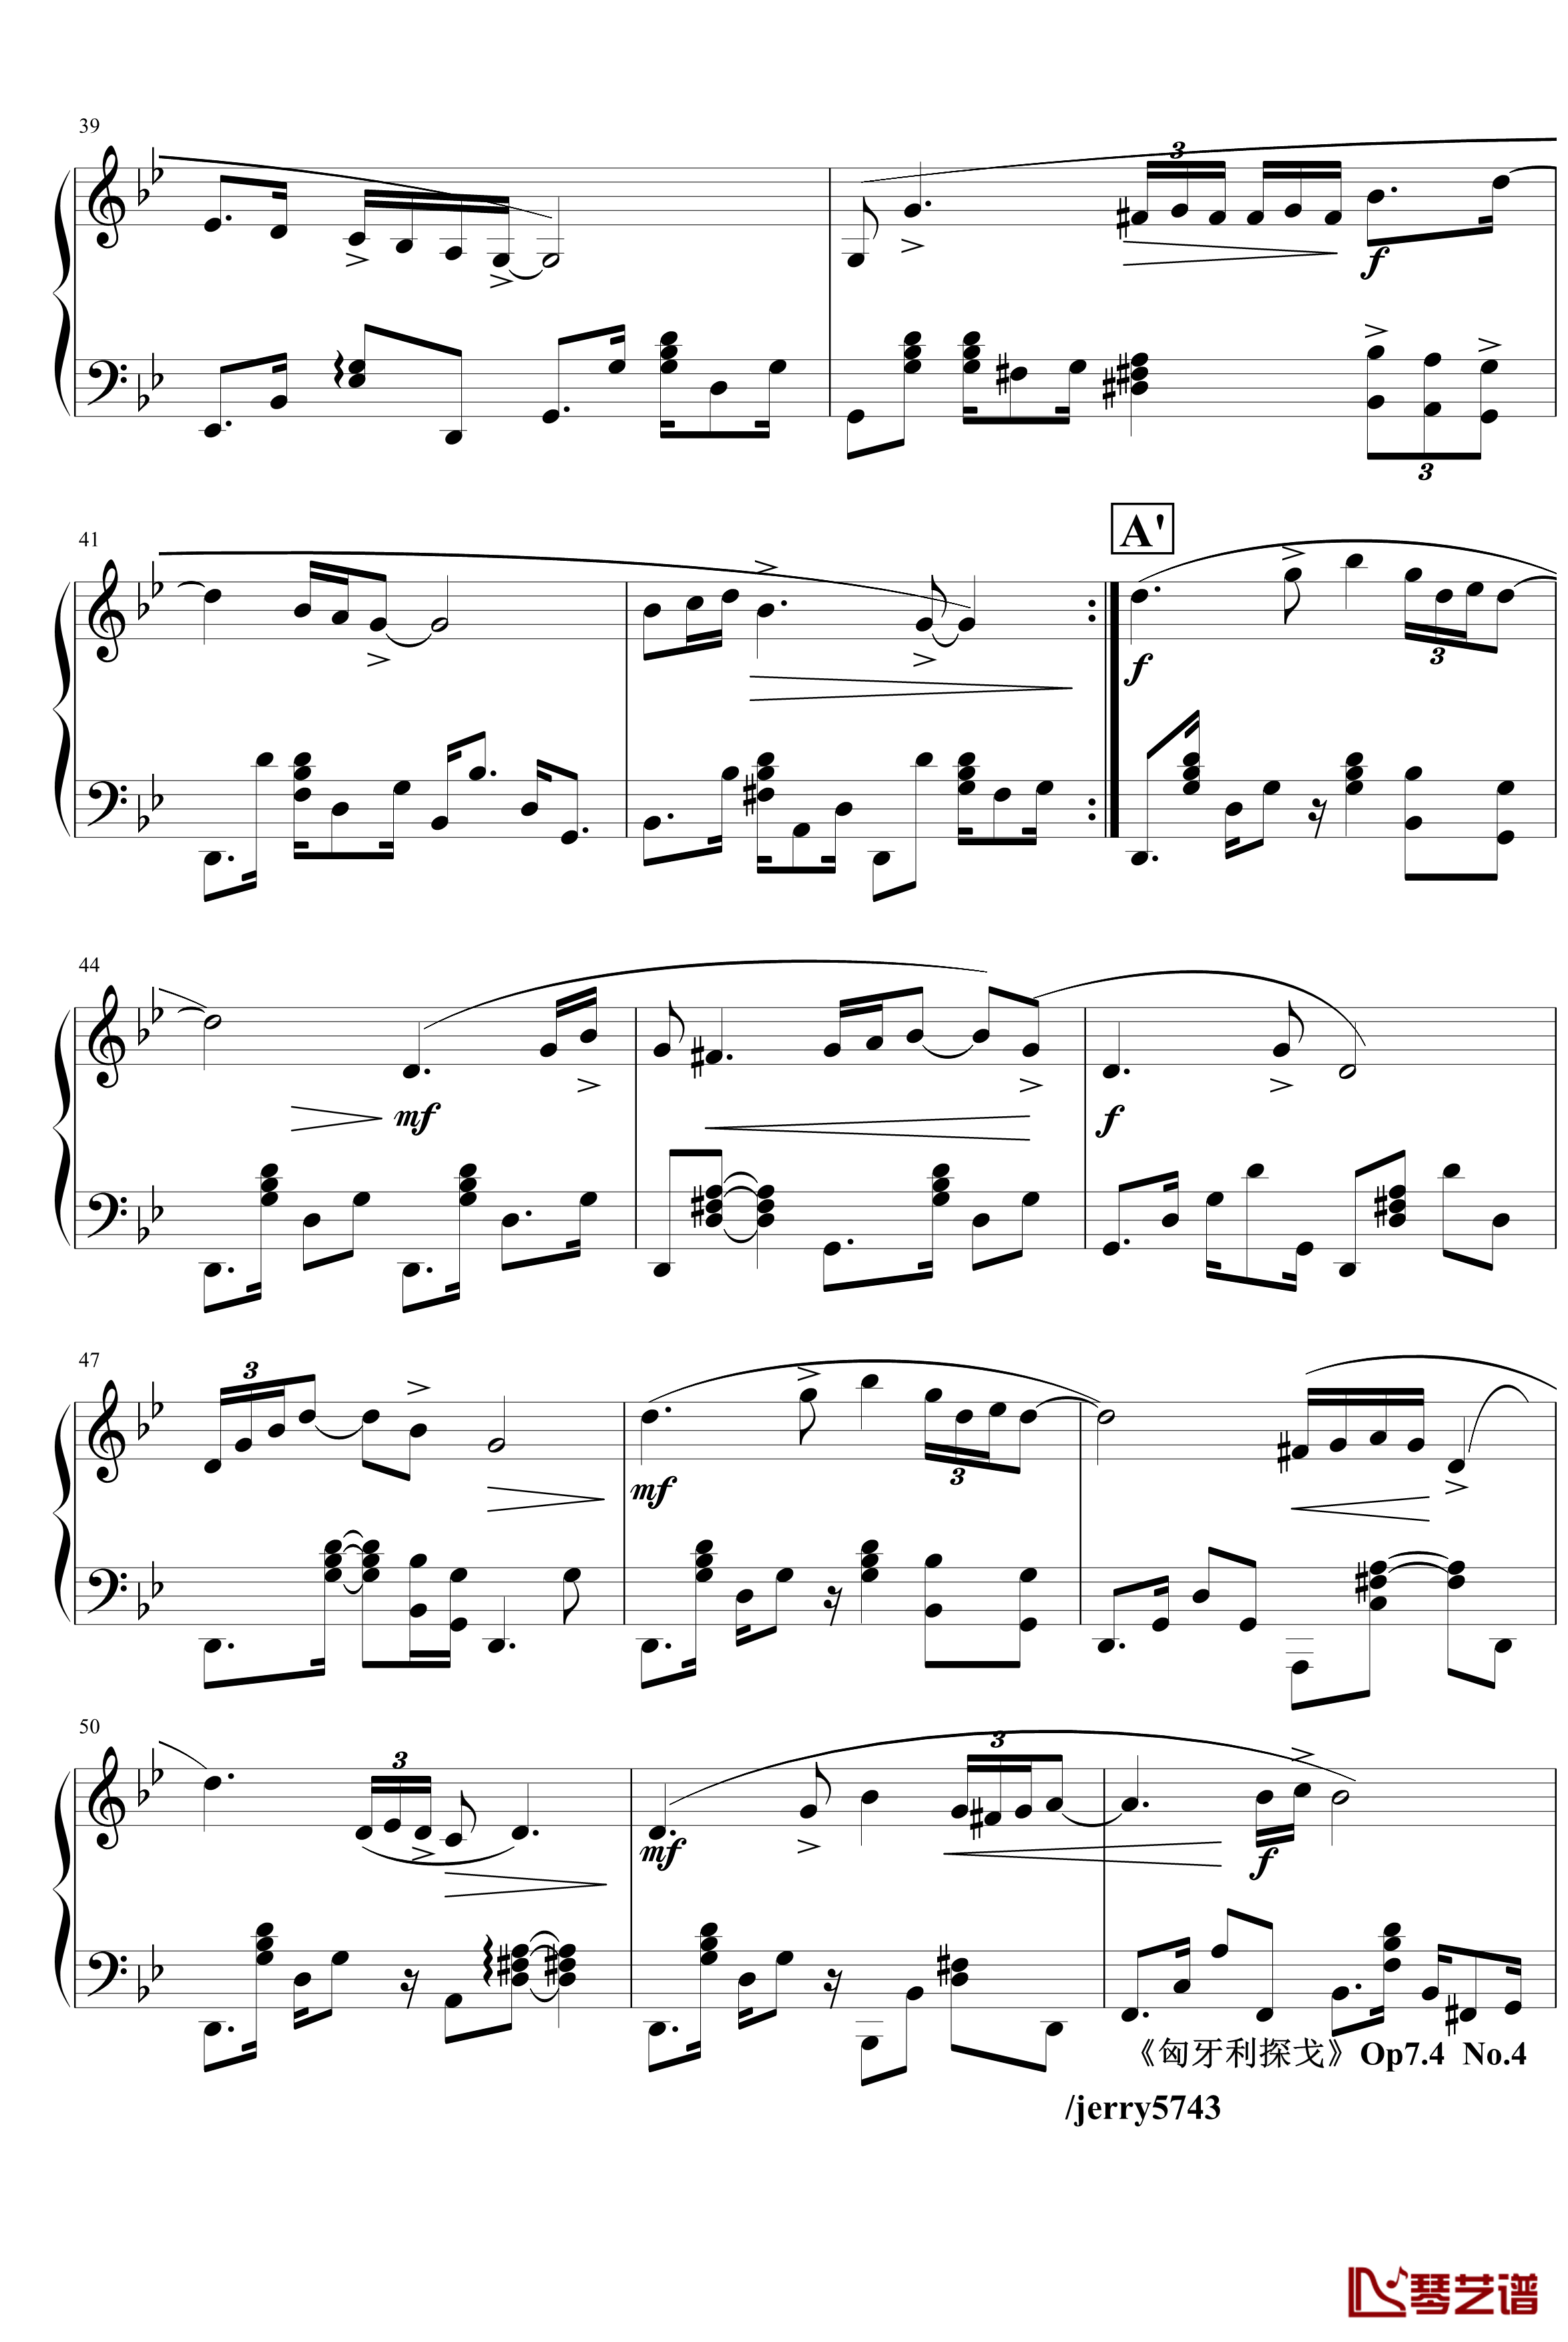 匈牙利探戈Op7.4钢琴谱-异国风情-jerry57434